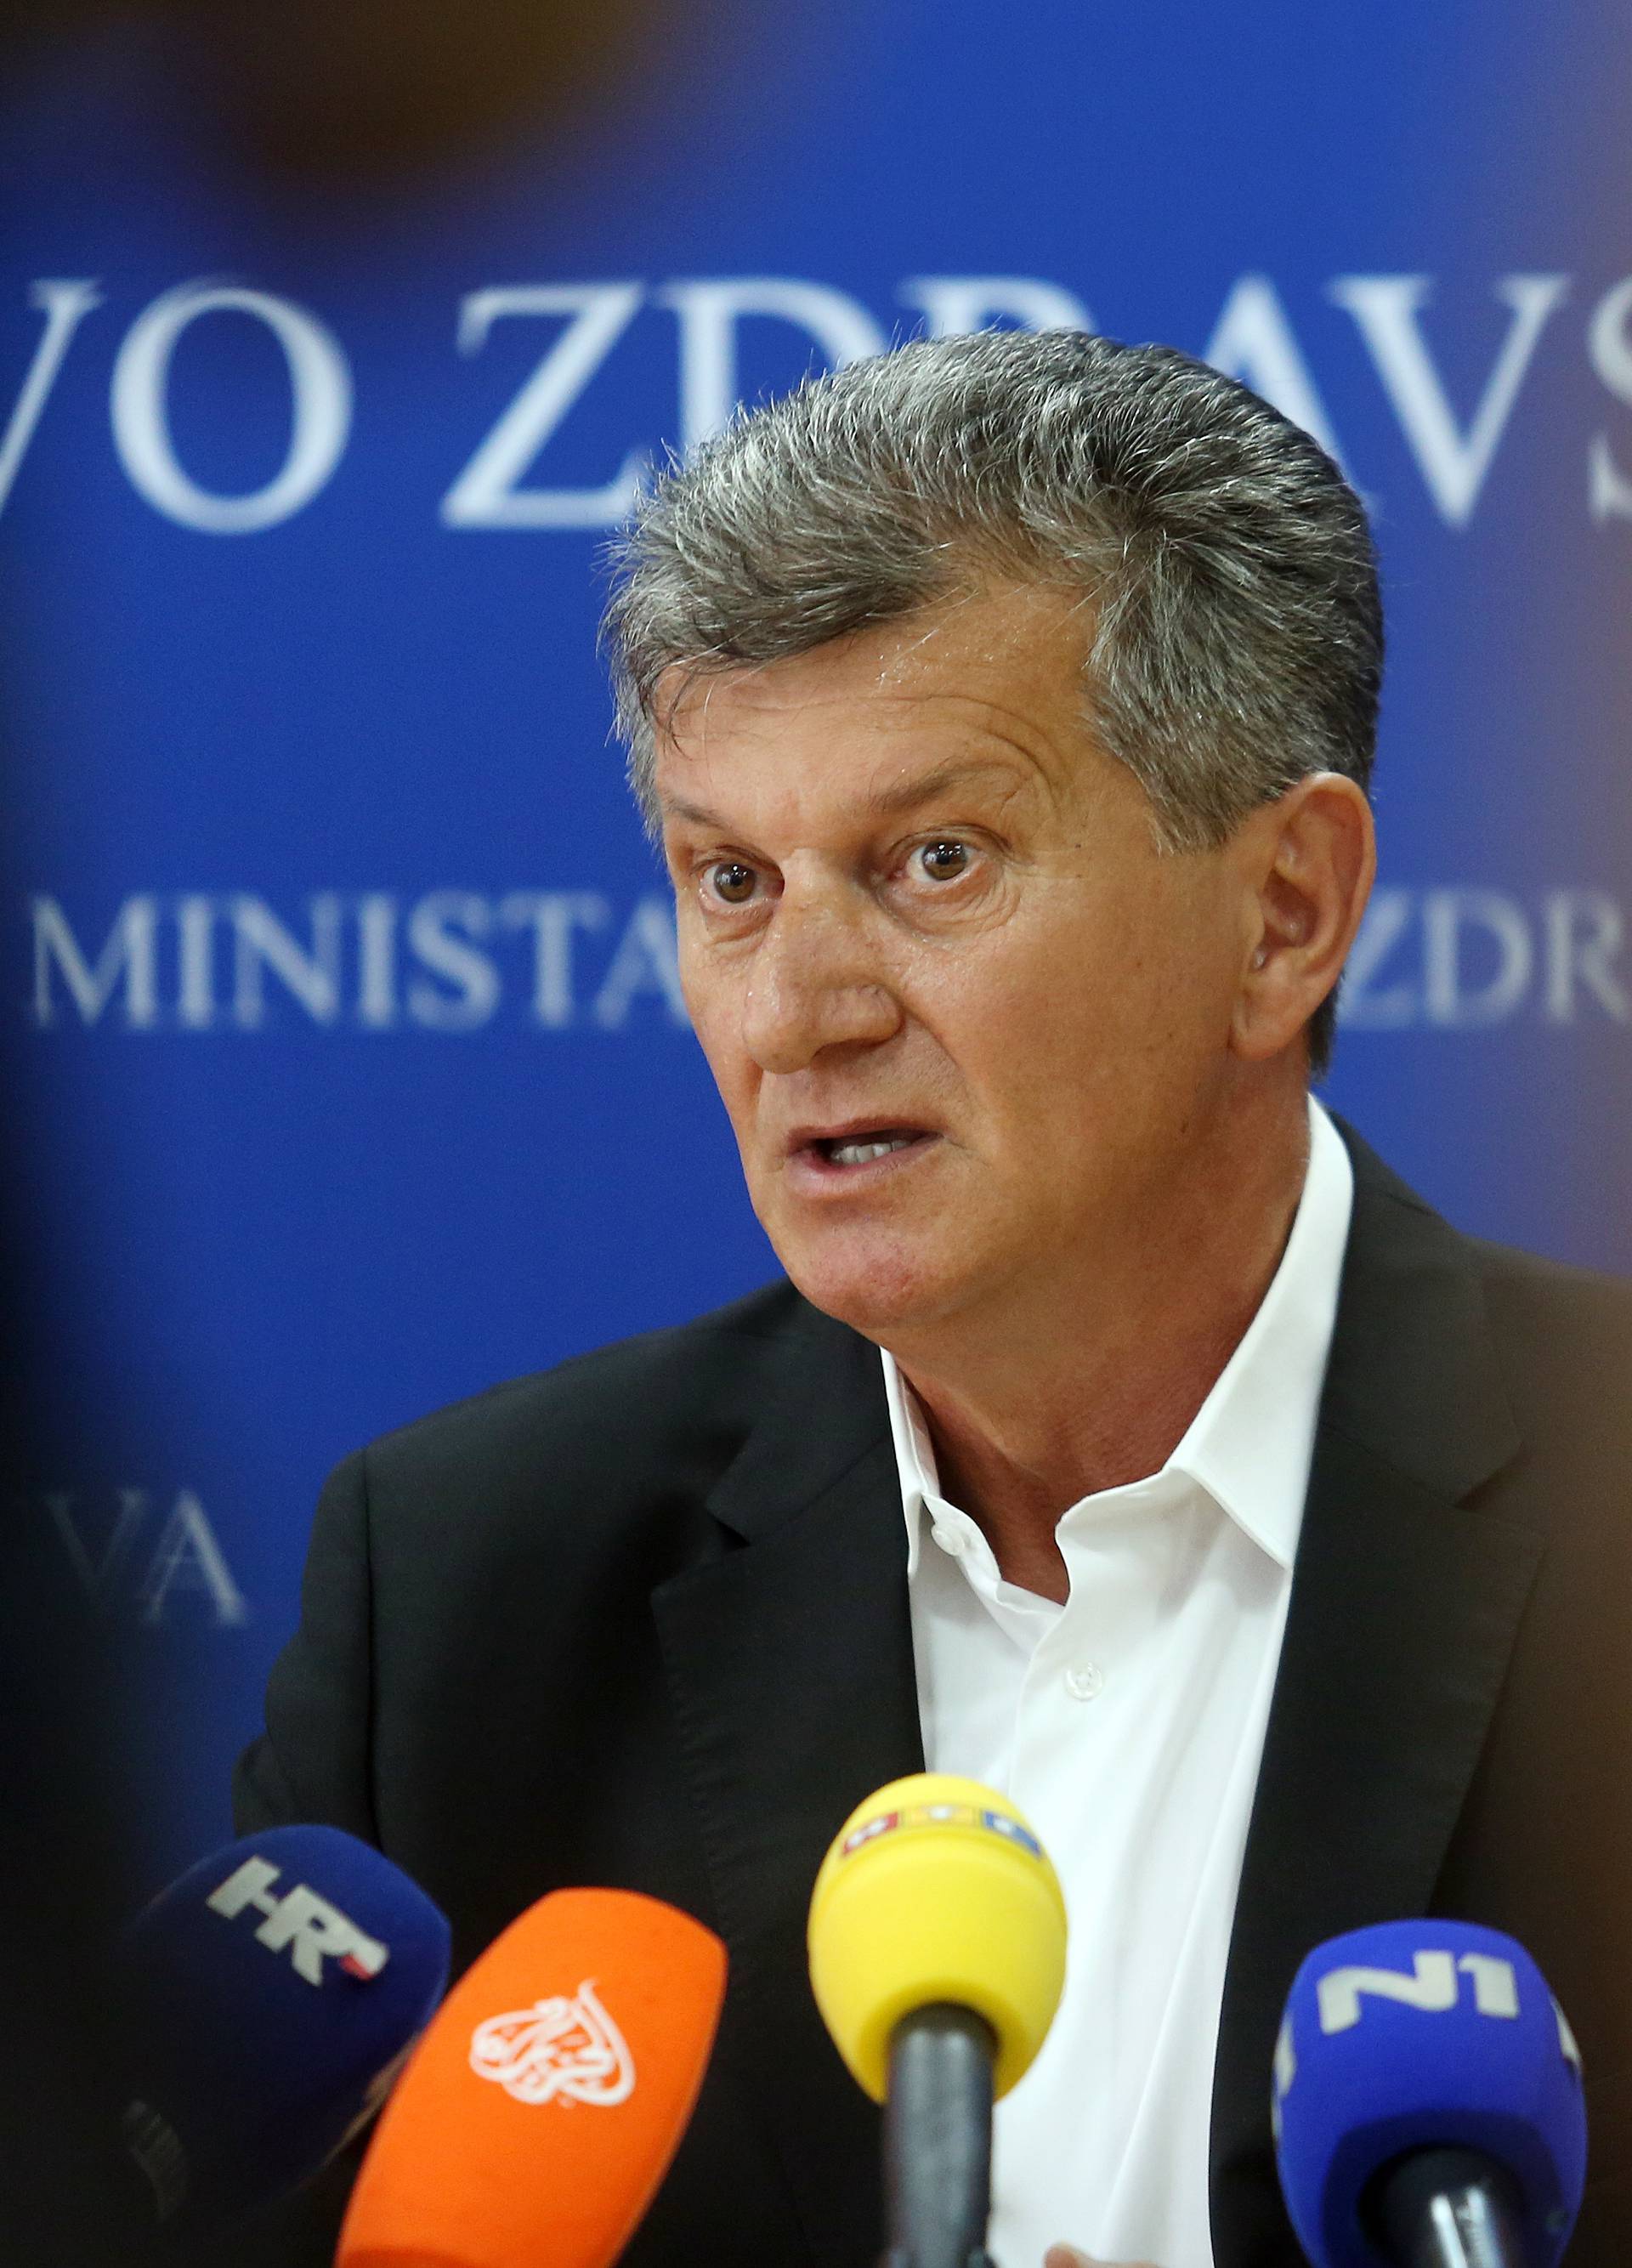 Zagreb: Ministar KujundÅ¾iÄ ne podnosi ostavku - sustav je funkcionirao prema regulativi